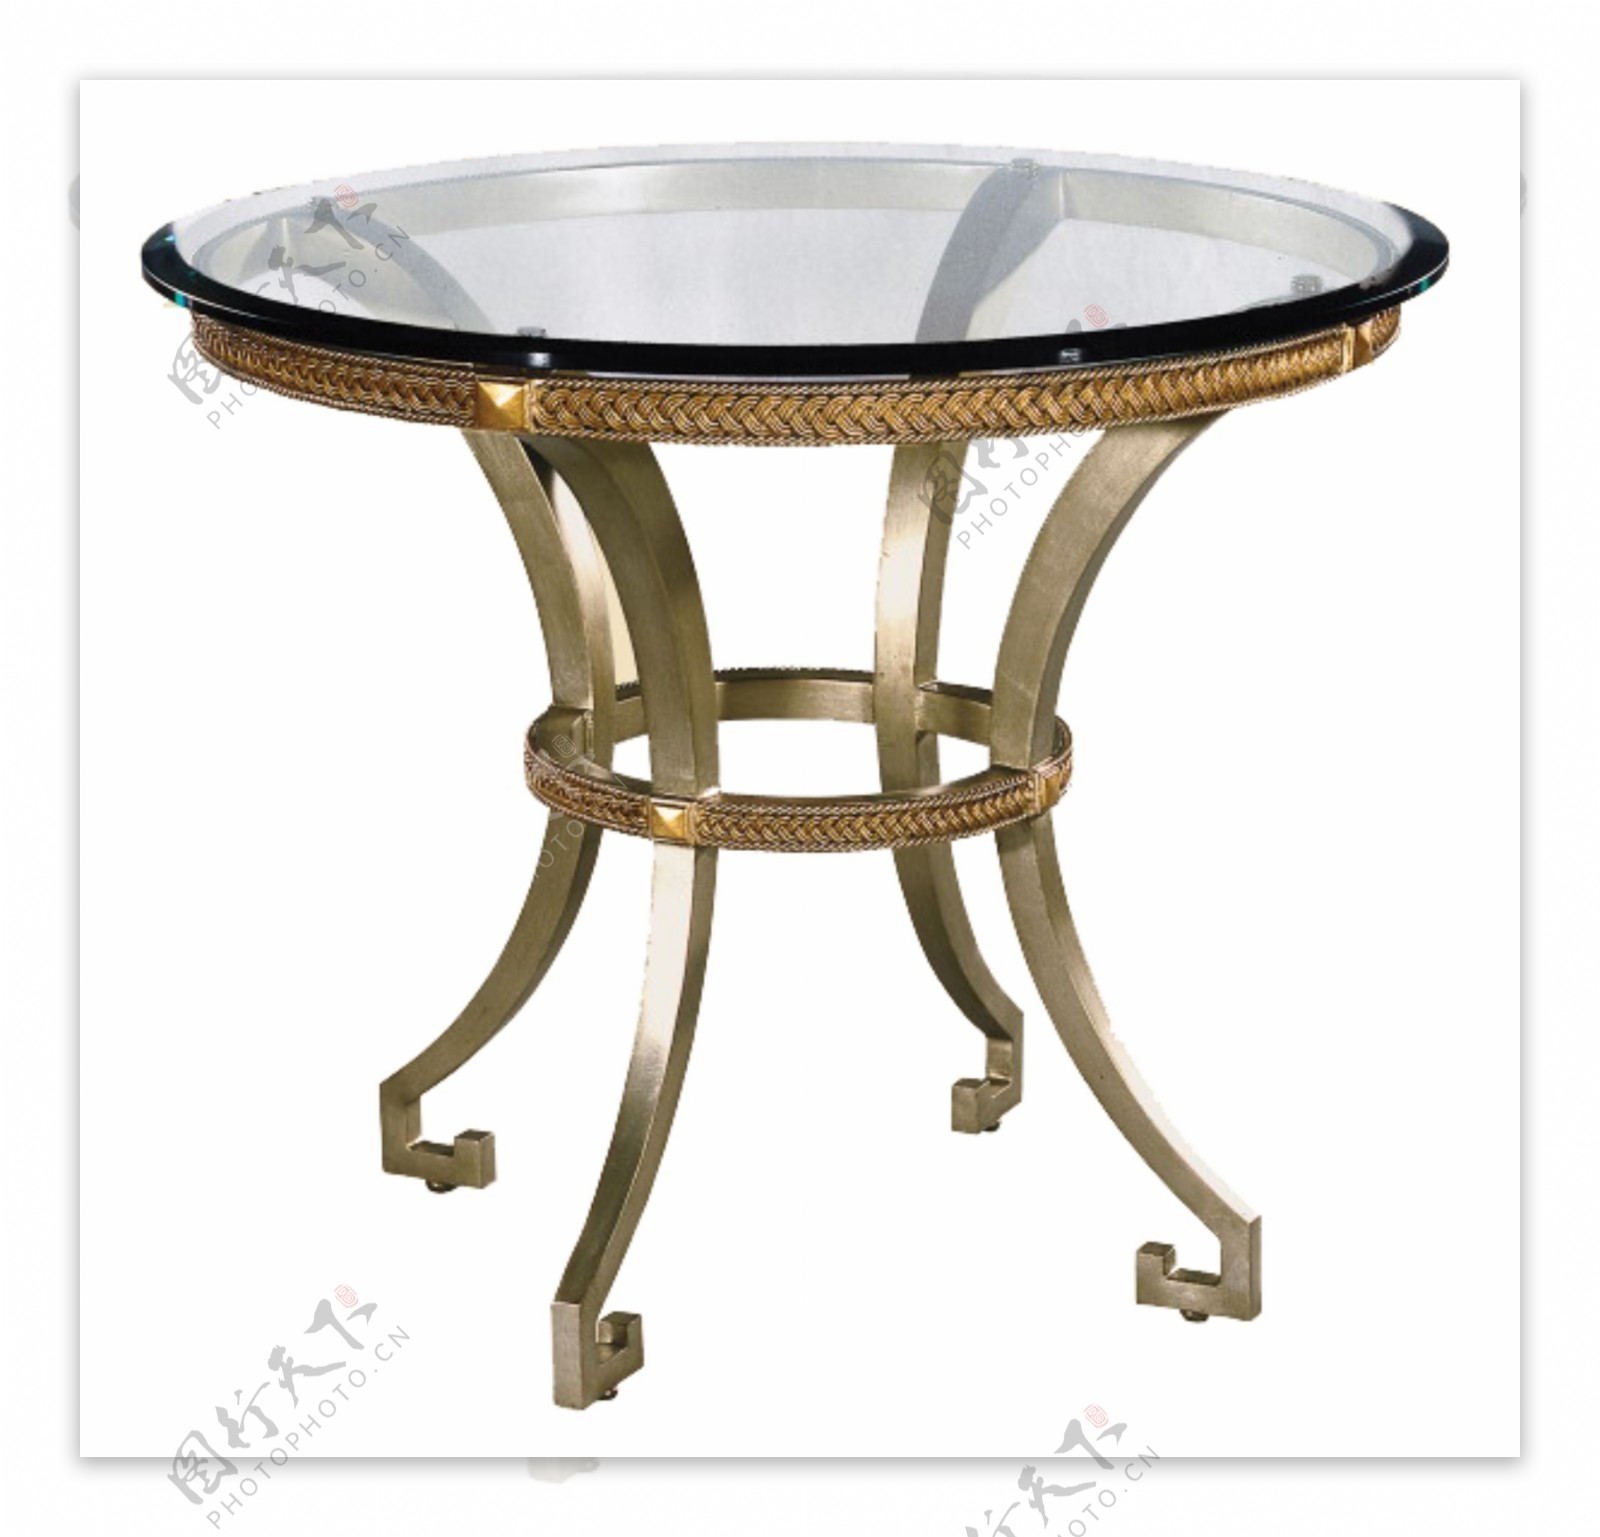 简约玻璃台面圆形桌子设计